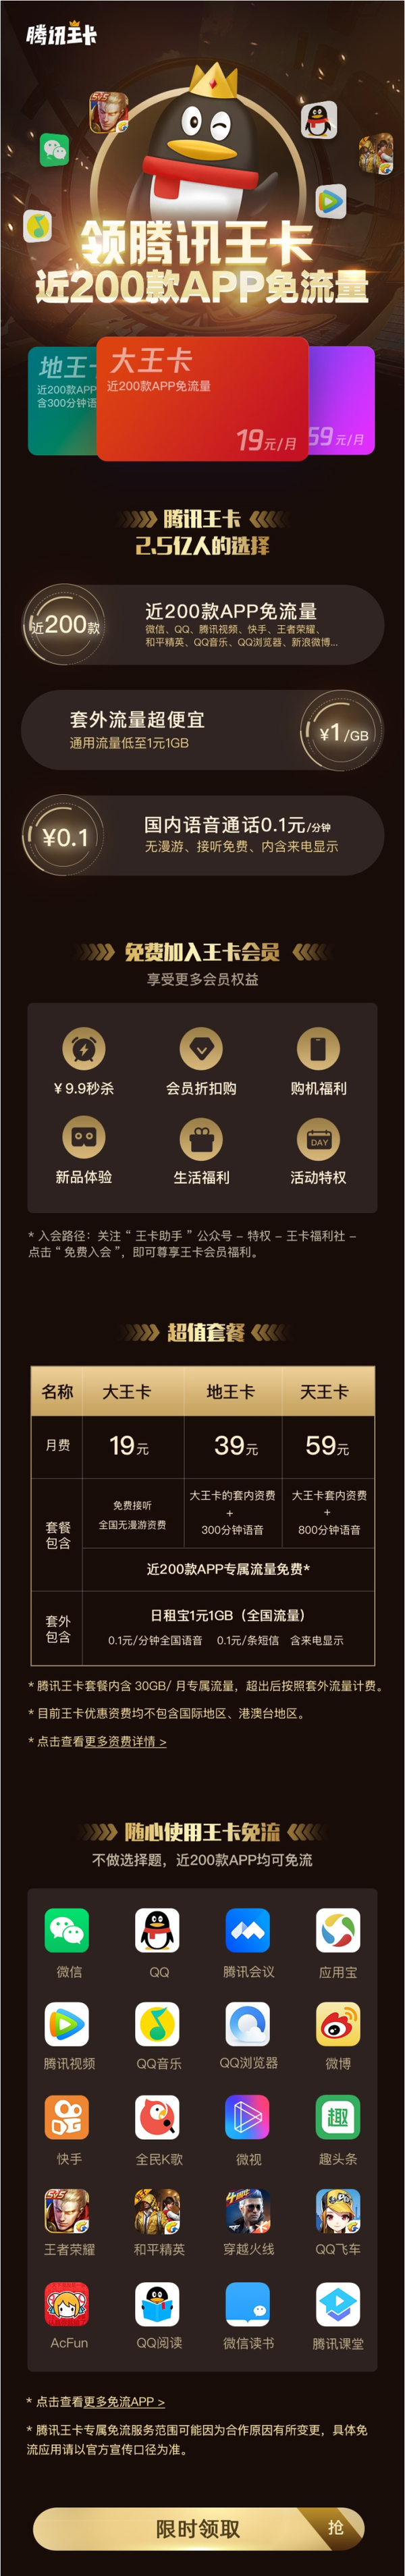  中国联通 腾讯大王卡 月租19元 腾讯系APP专享30GB流量